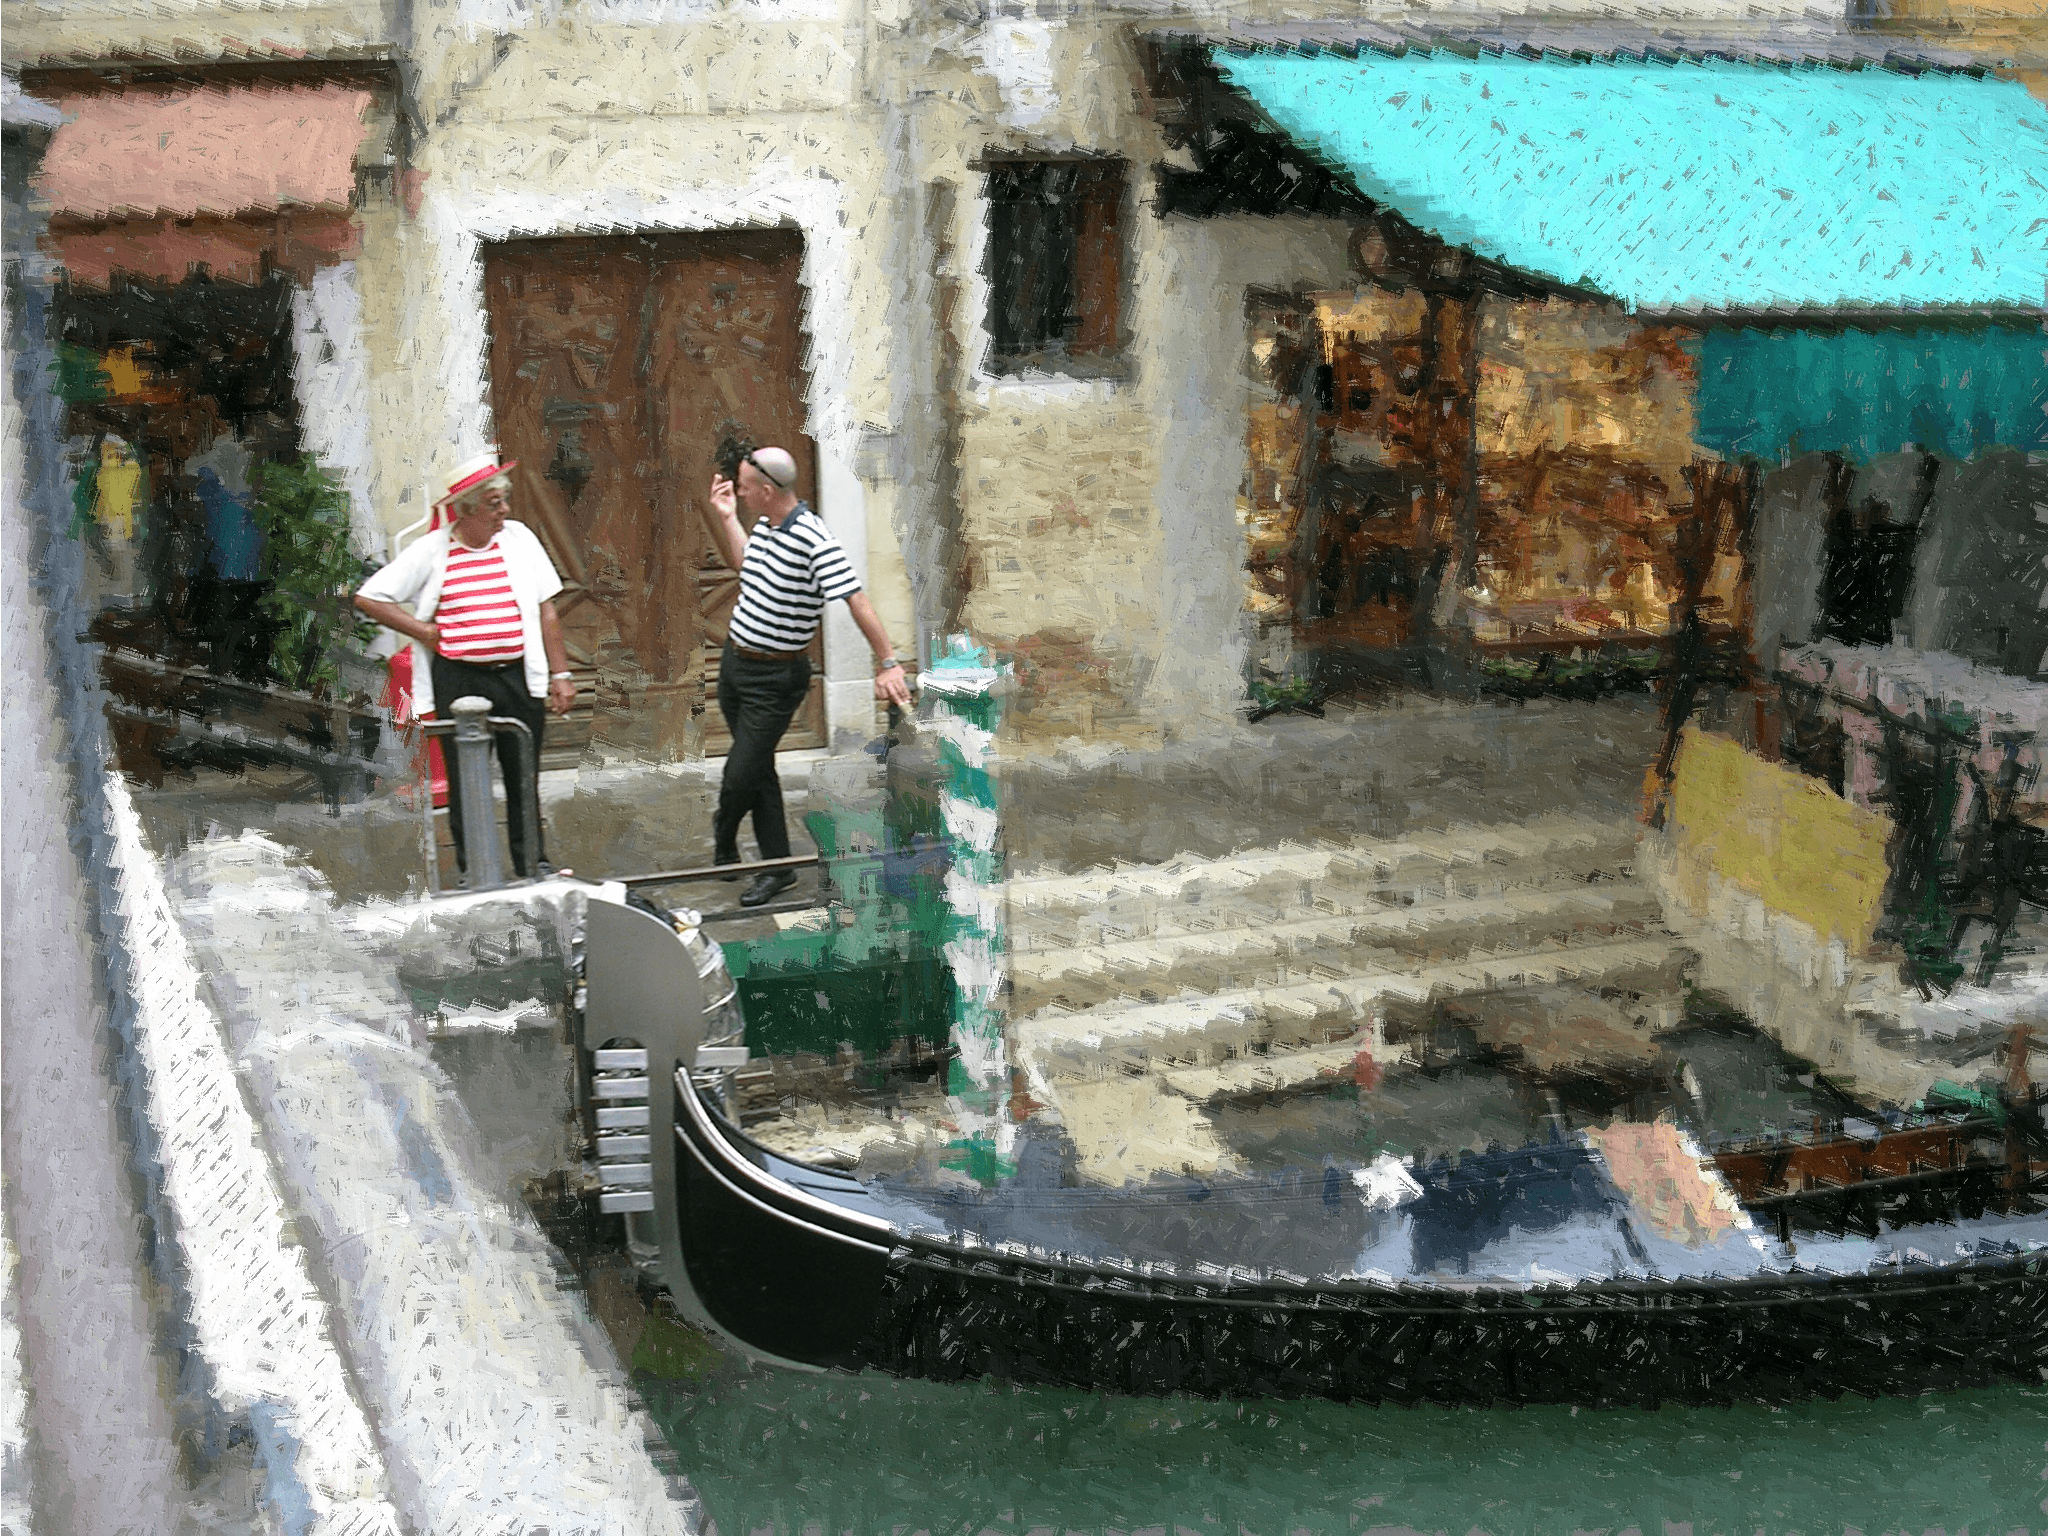 Venice-Gondoliers Taking A Break